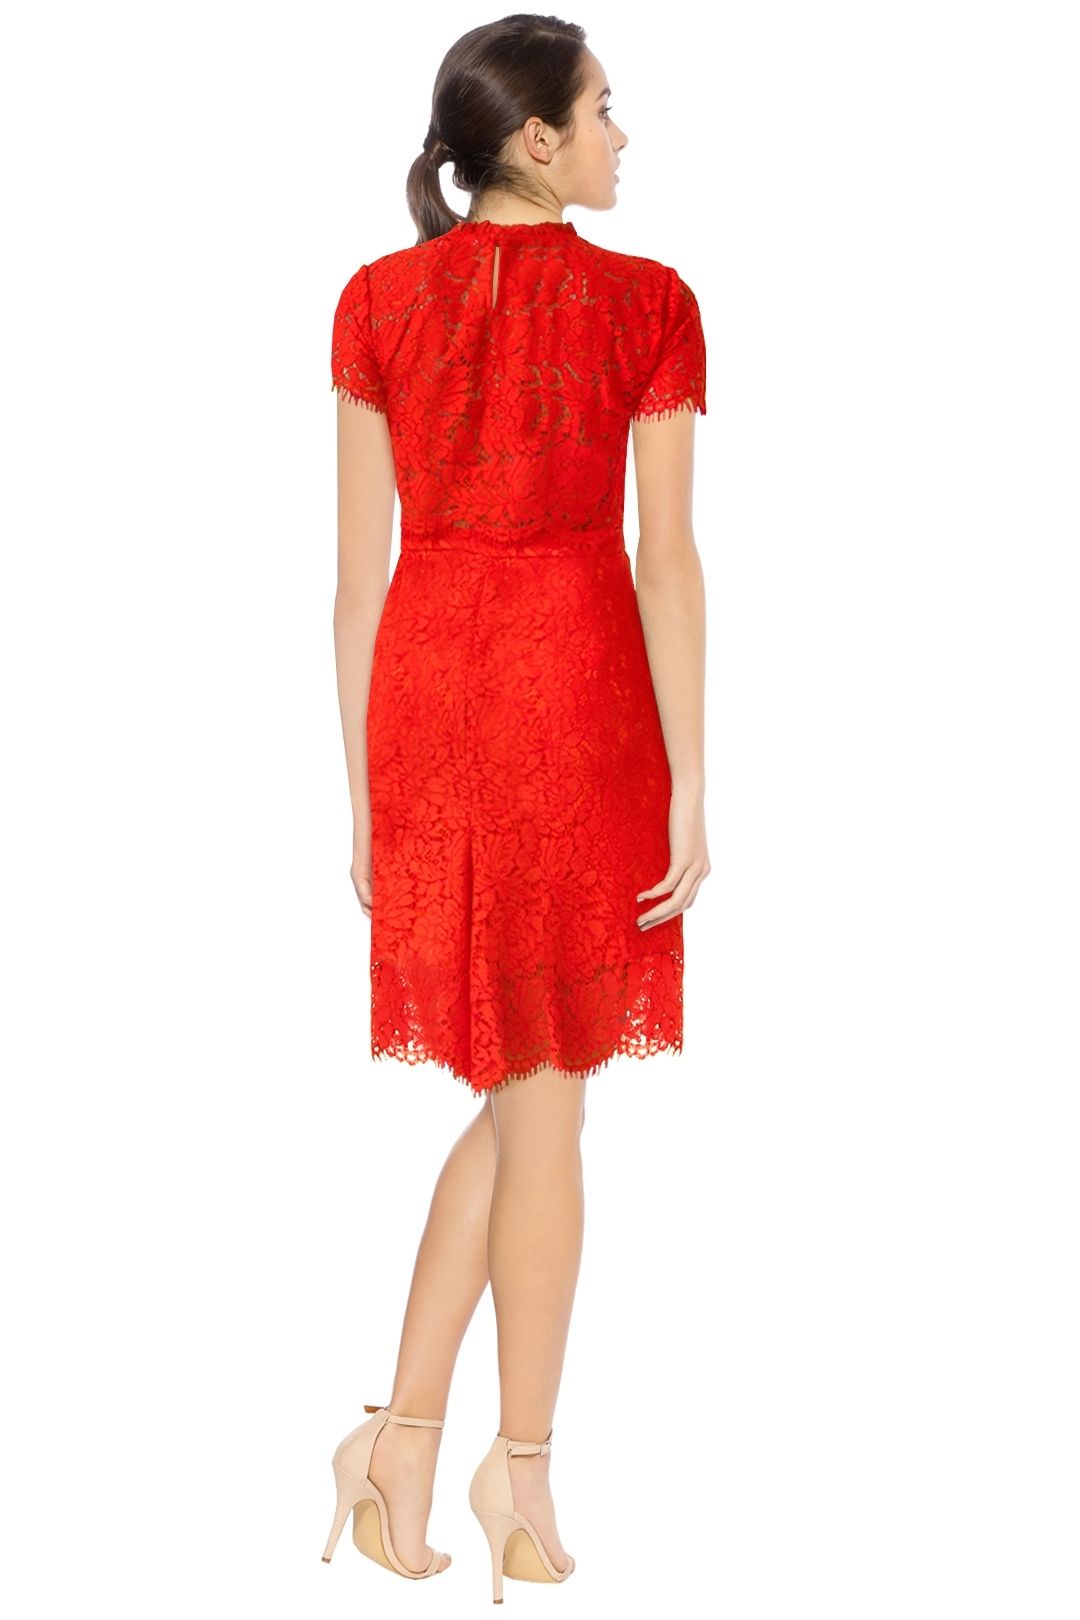 Diane Von Furstenberg - Alma Short Sleeve Dress - Red - Back